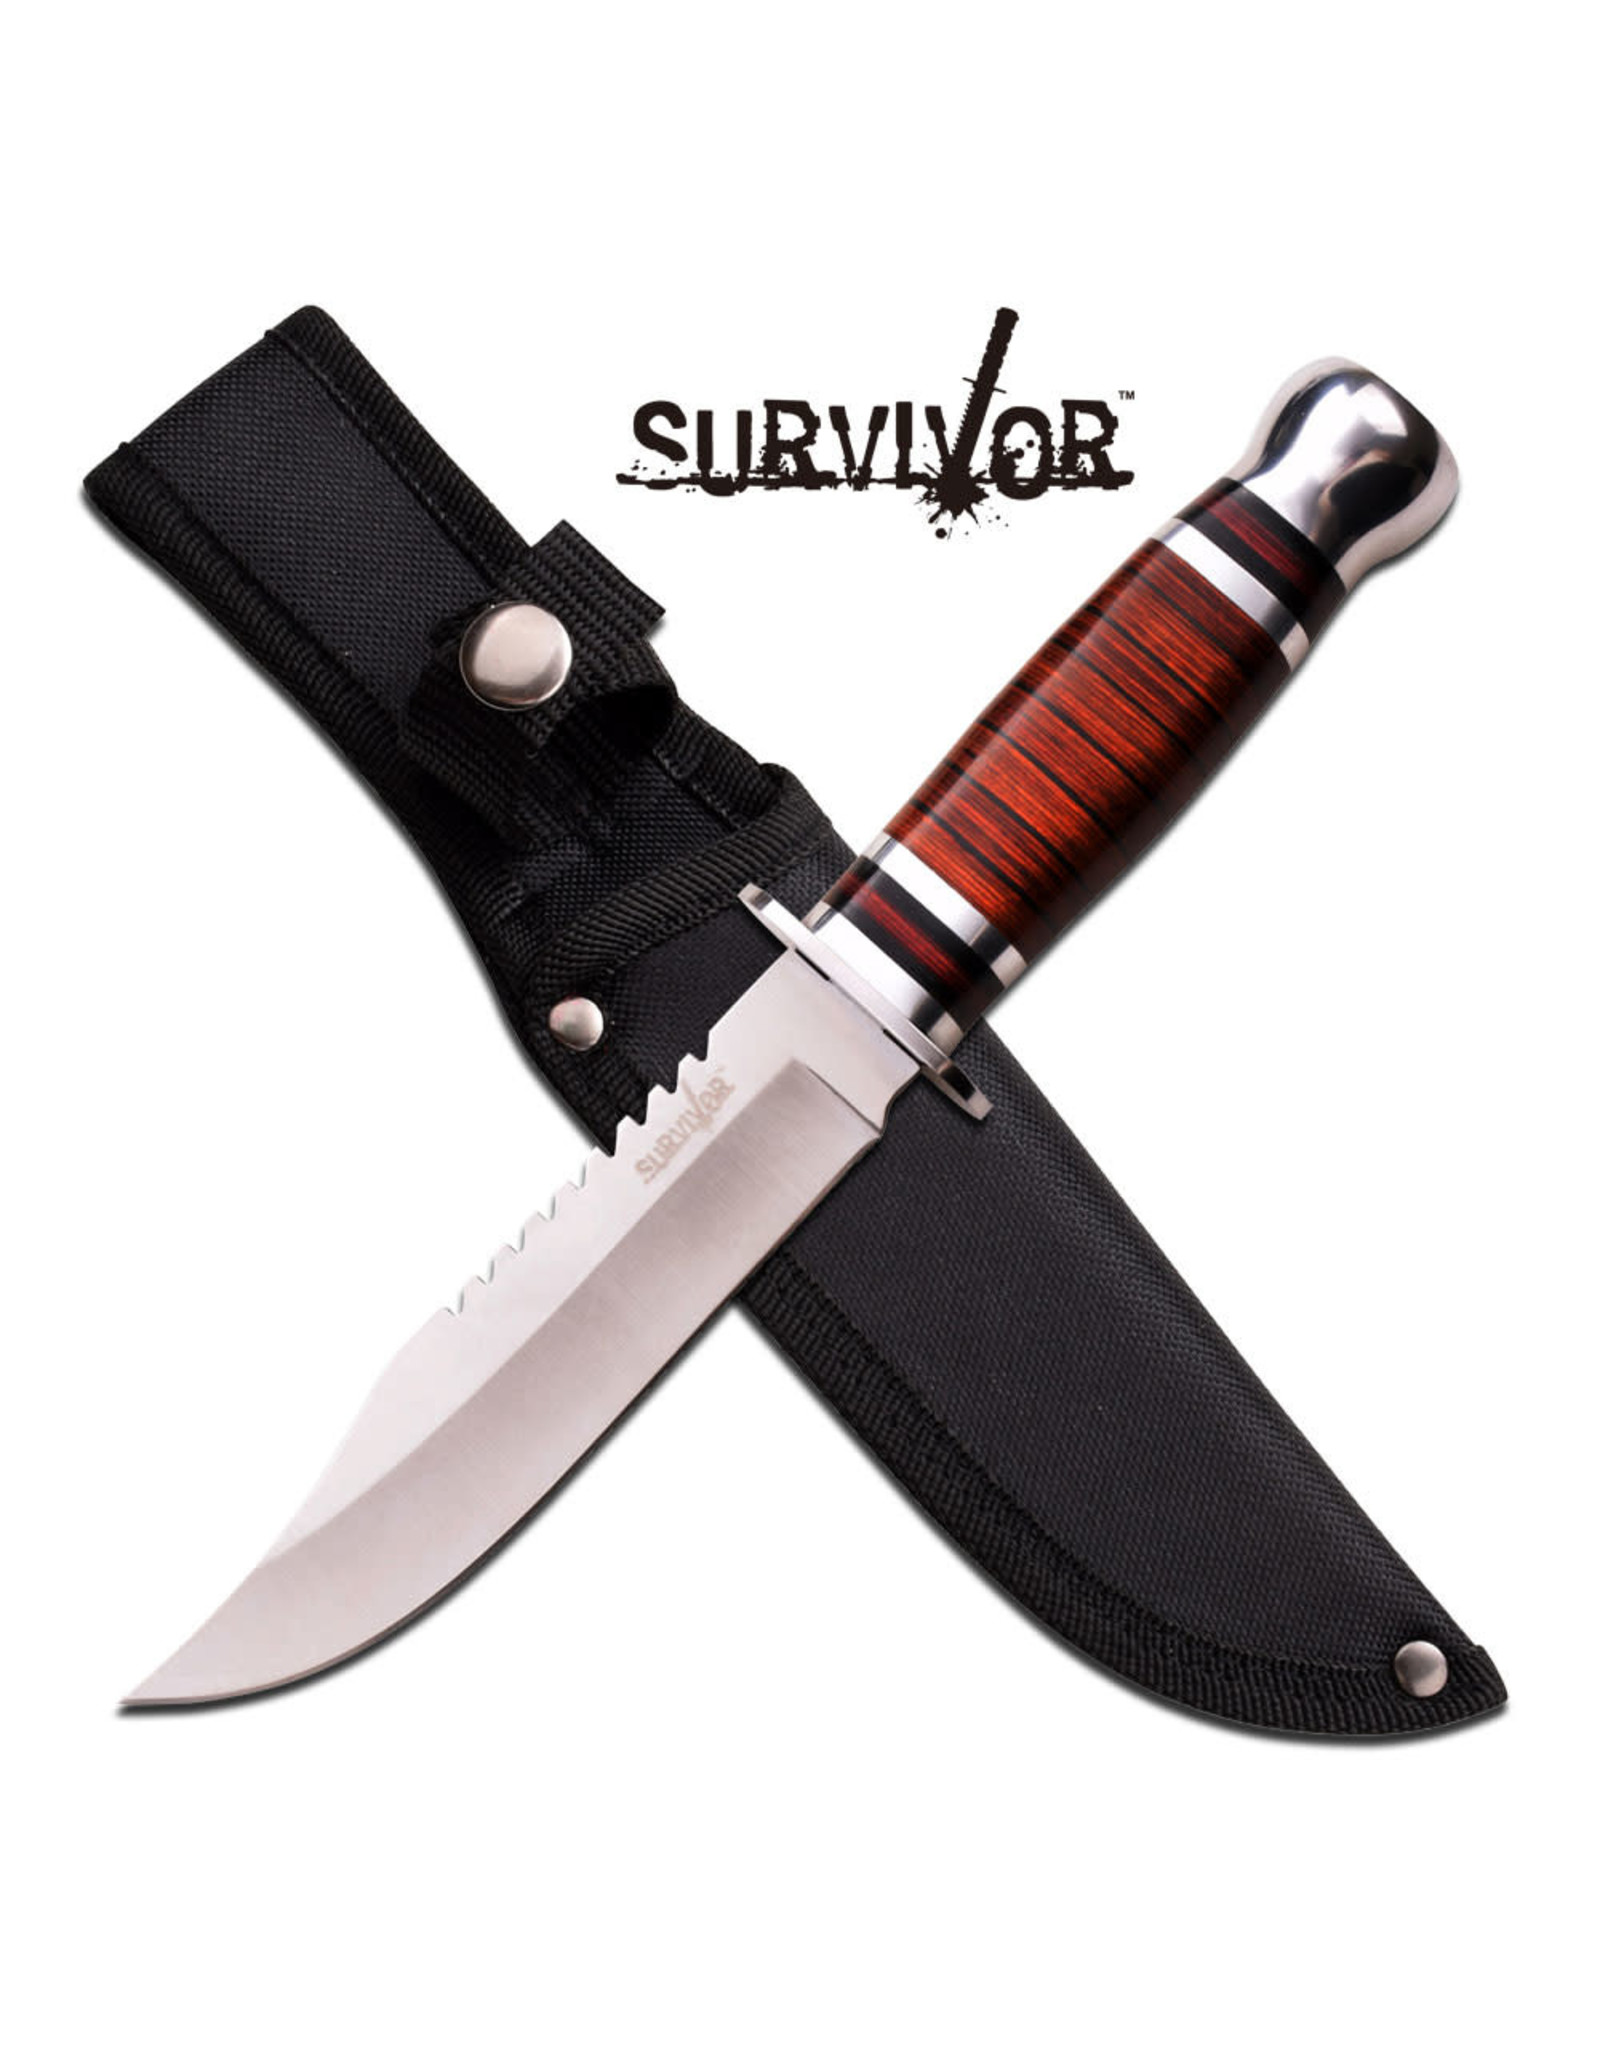 Survivor SURVIVOR HK-782S FIXED BLADE KNIFE 10.5" OVERALLBlade Knife